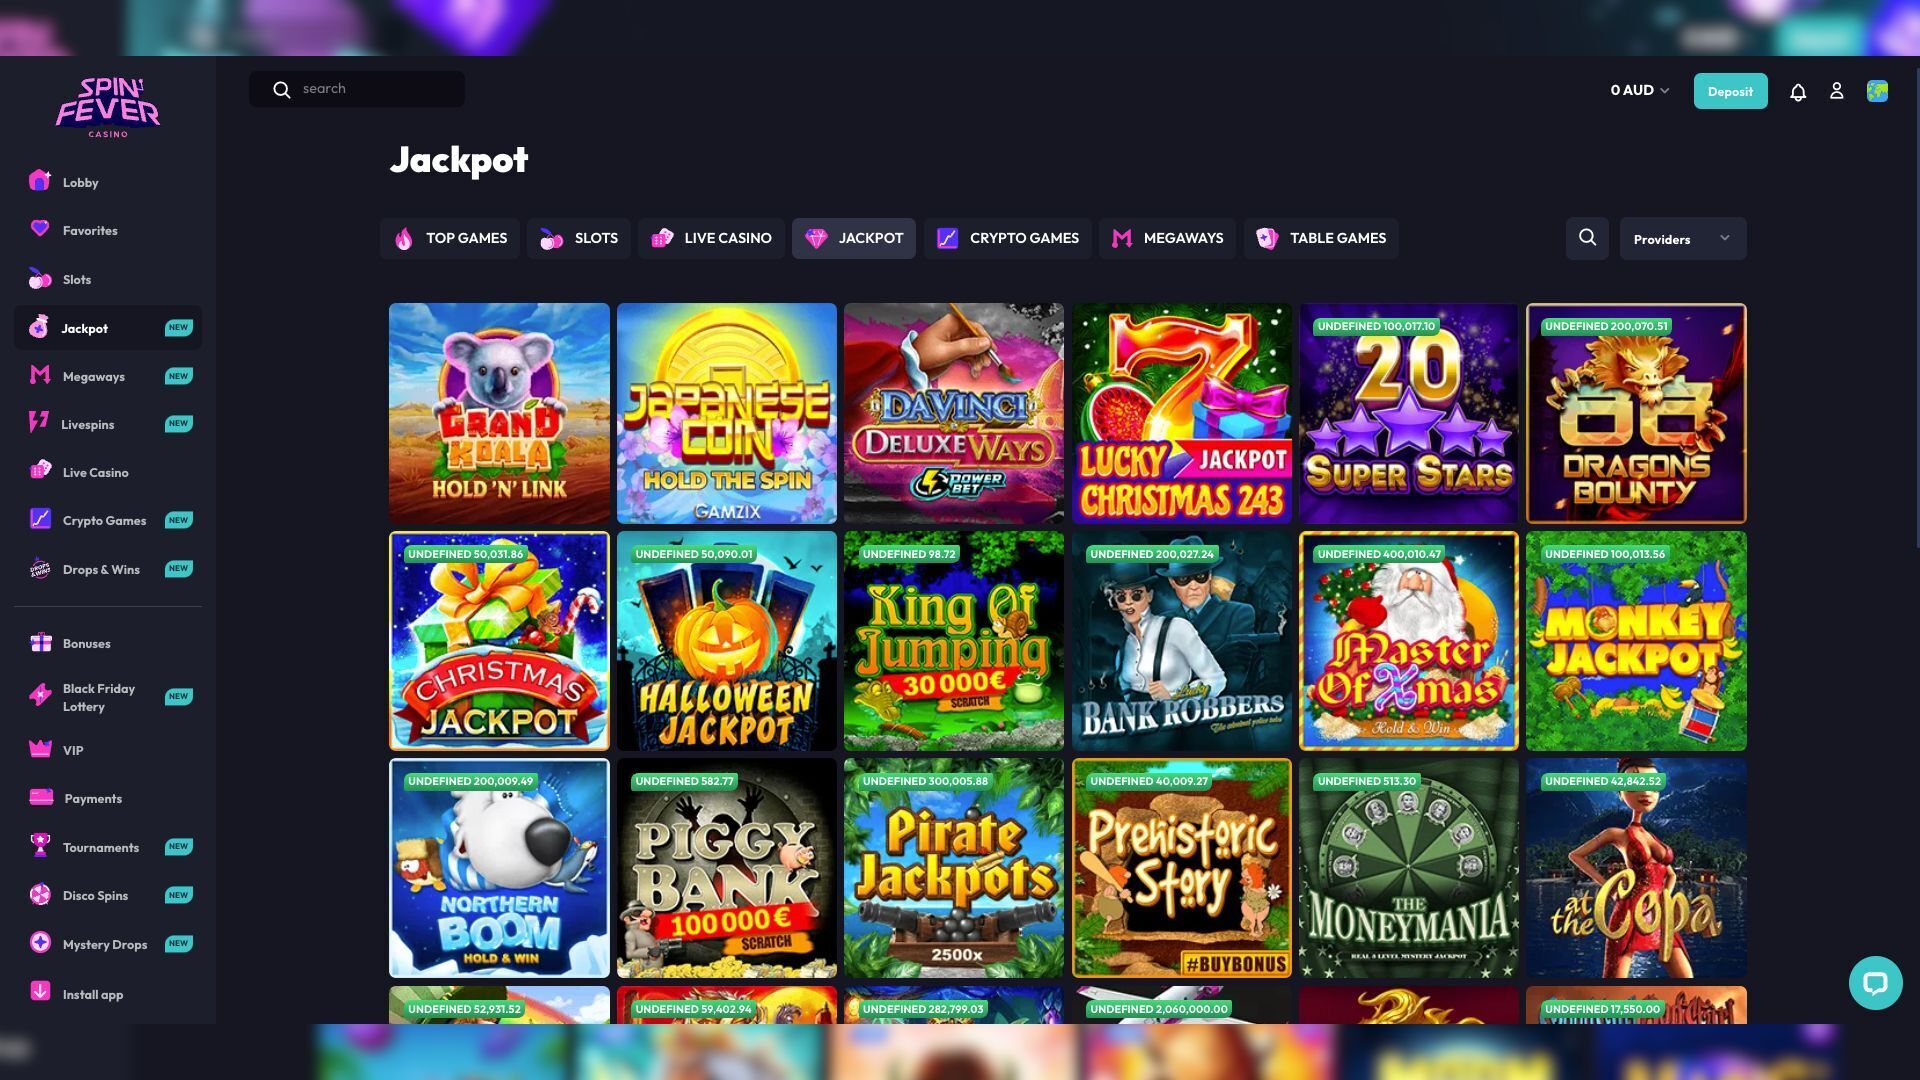 SpinFever Casino Jackpot Games